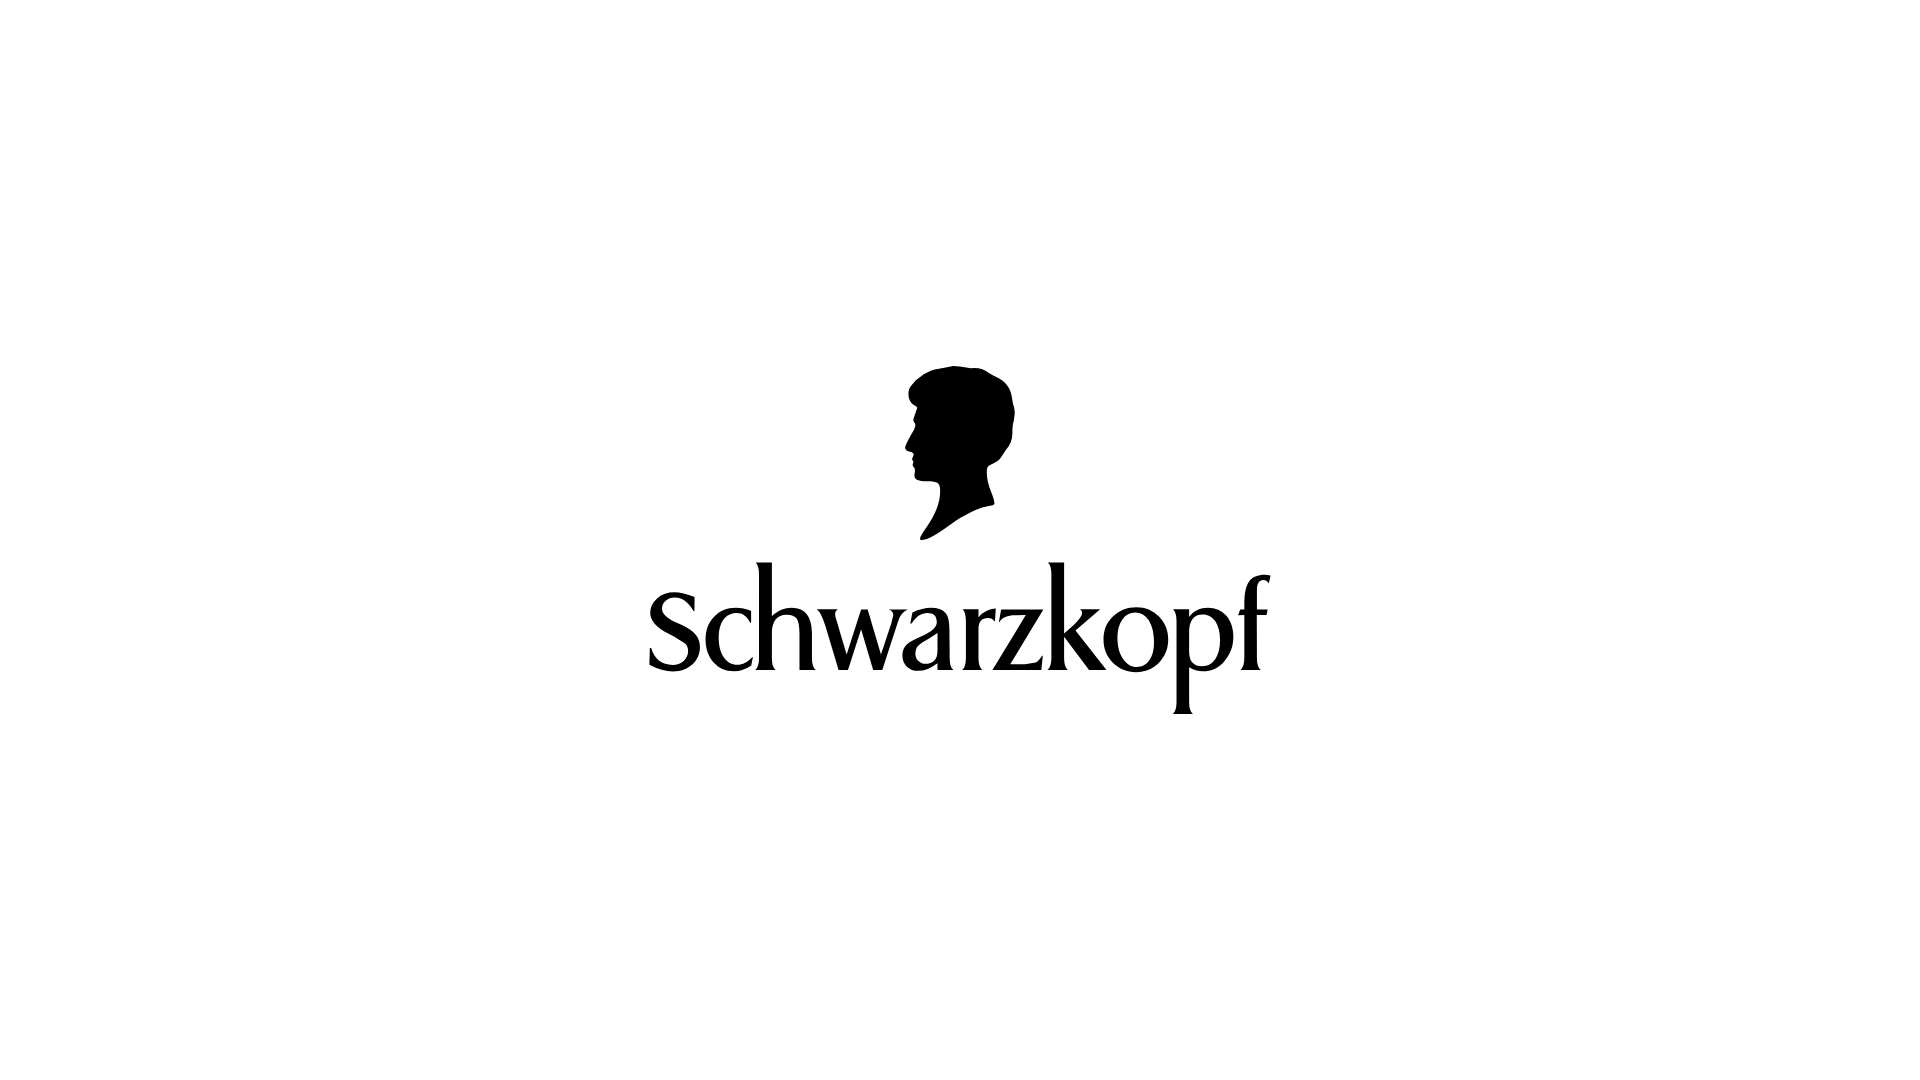 Schwarzkopf logo.png